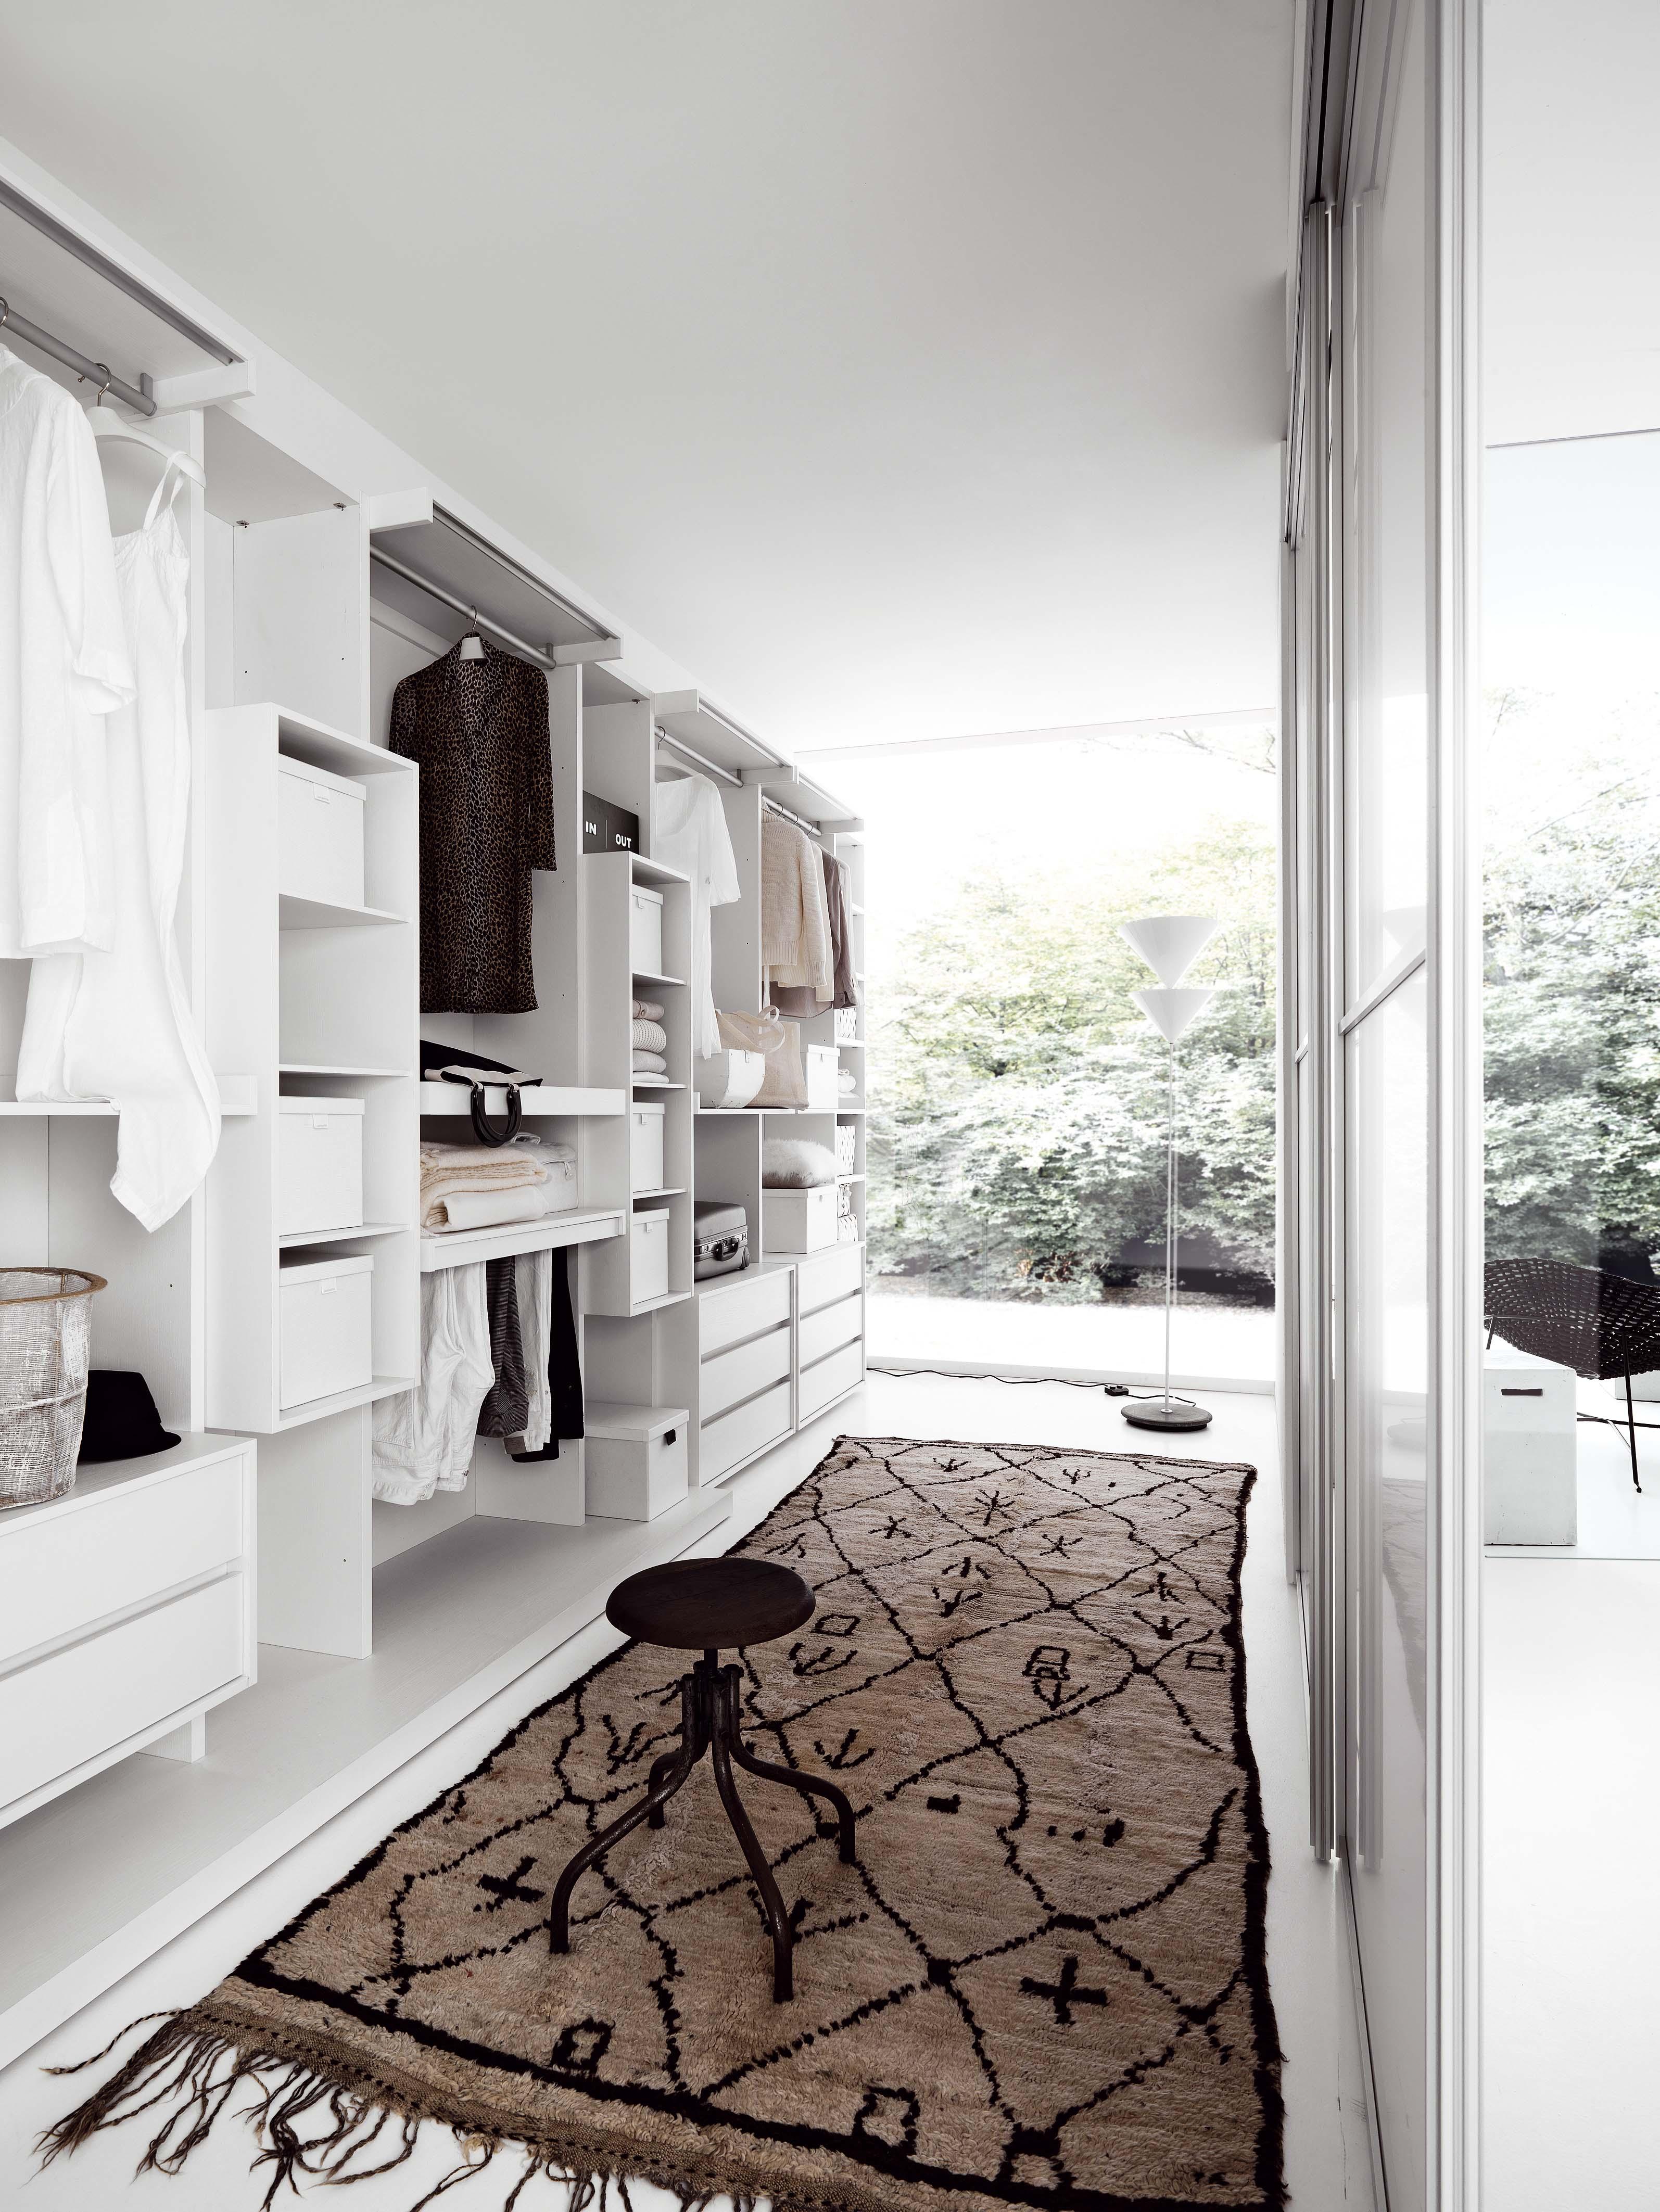 Begehbarer Kleiderschrank Weiß #kleiderschrank #begehbarerkleiderschrank #ankleidezimmer ©Livarea.de